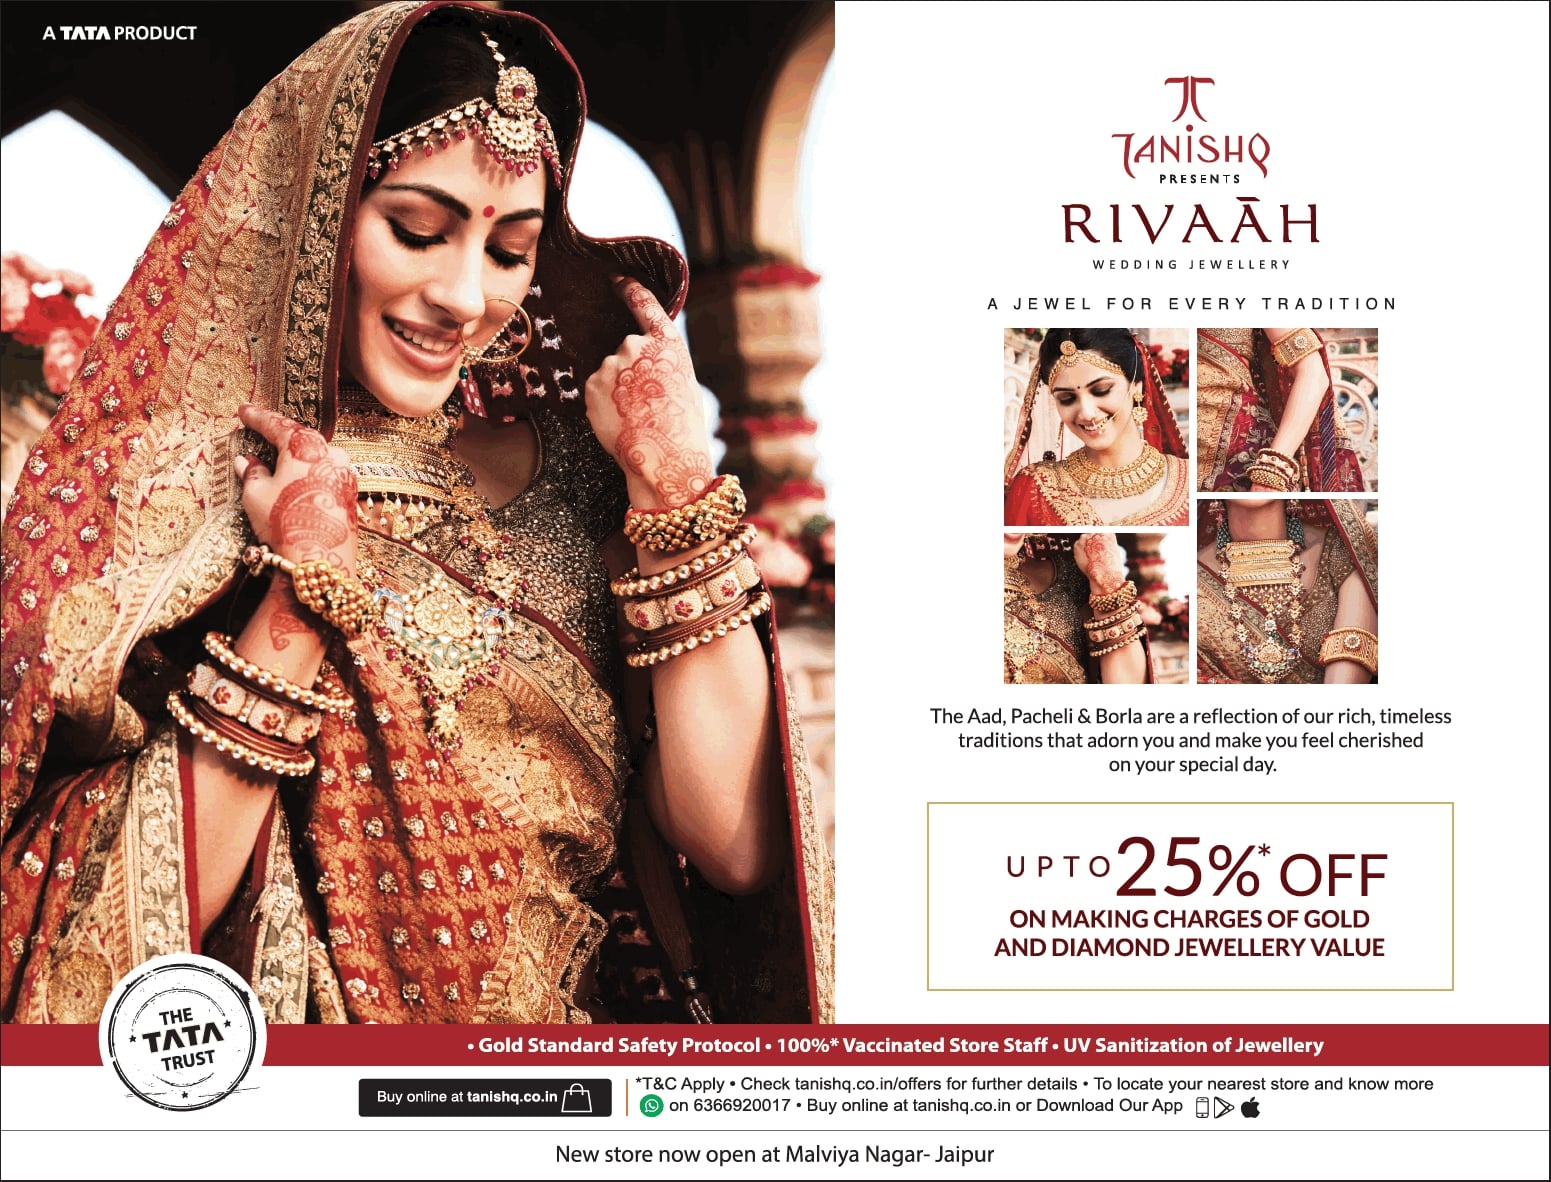 tanishq-rivaah-rajasthani-wedding-jewellery-the-aad-pacheli-and-borla-ad-toi-jaipur-1-7-2021